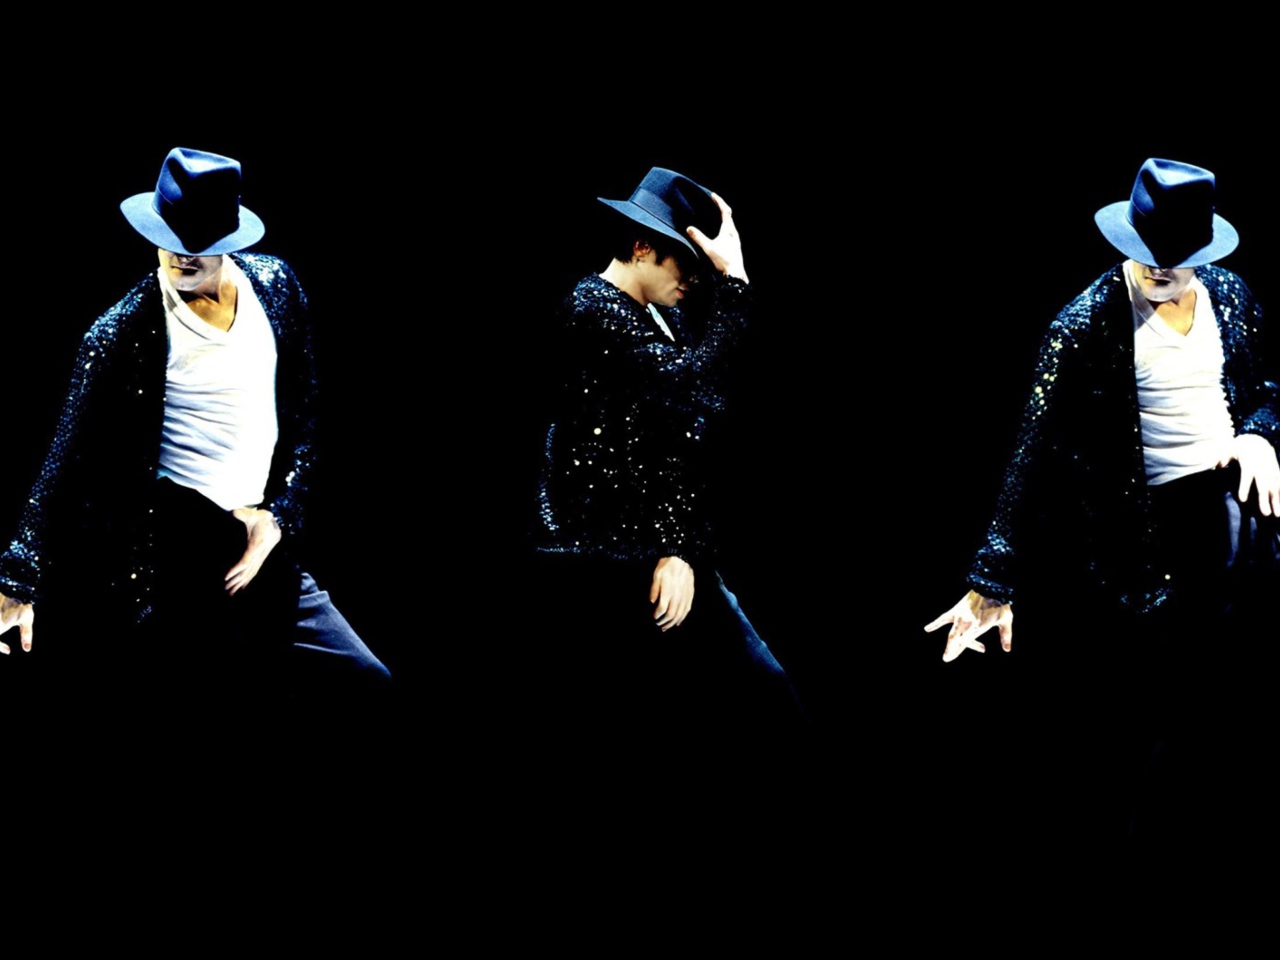 Michael Jackson wallpaper 1280x960